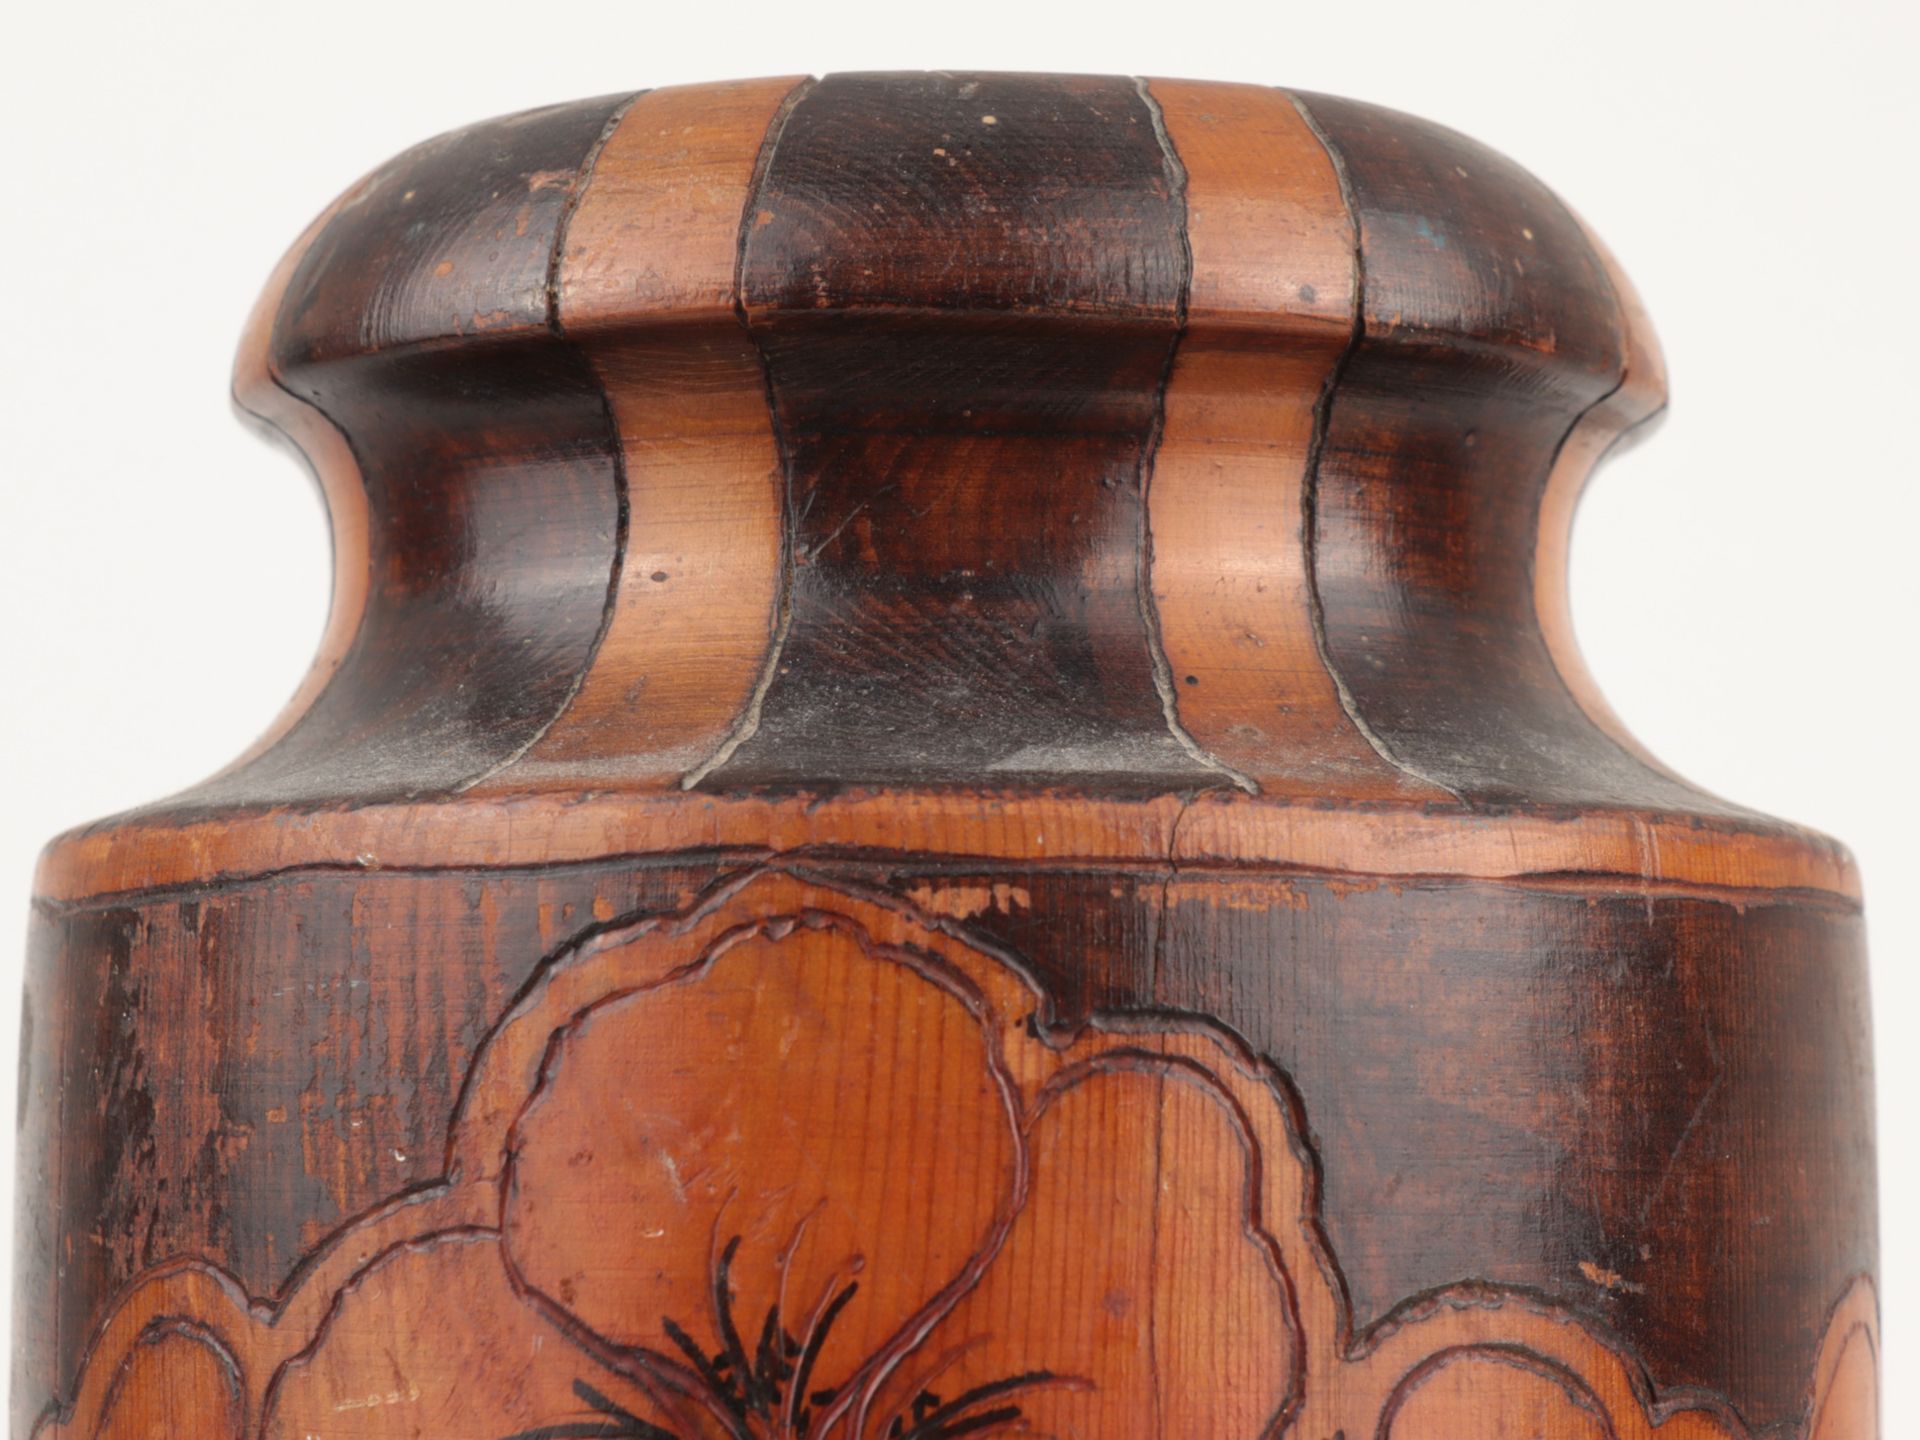 Jugendstil - Vase um 1910, Australien, Holz, gedrechselt, Ritzdekor, hell- u. dunkel g - Image 3 of 5